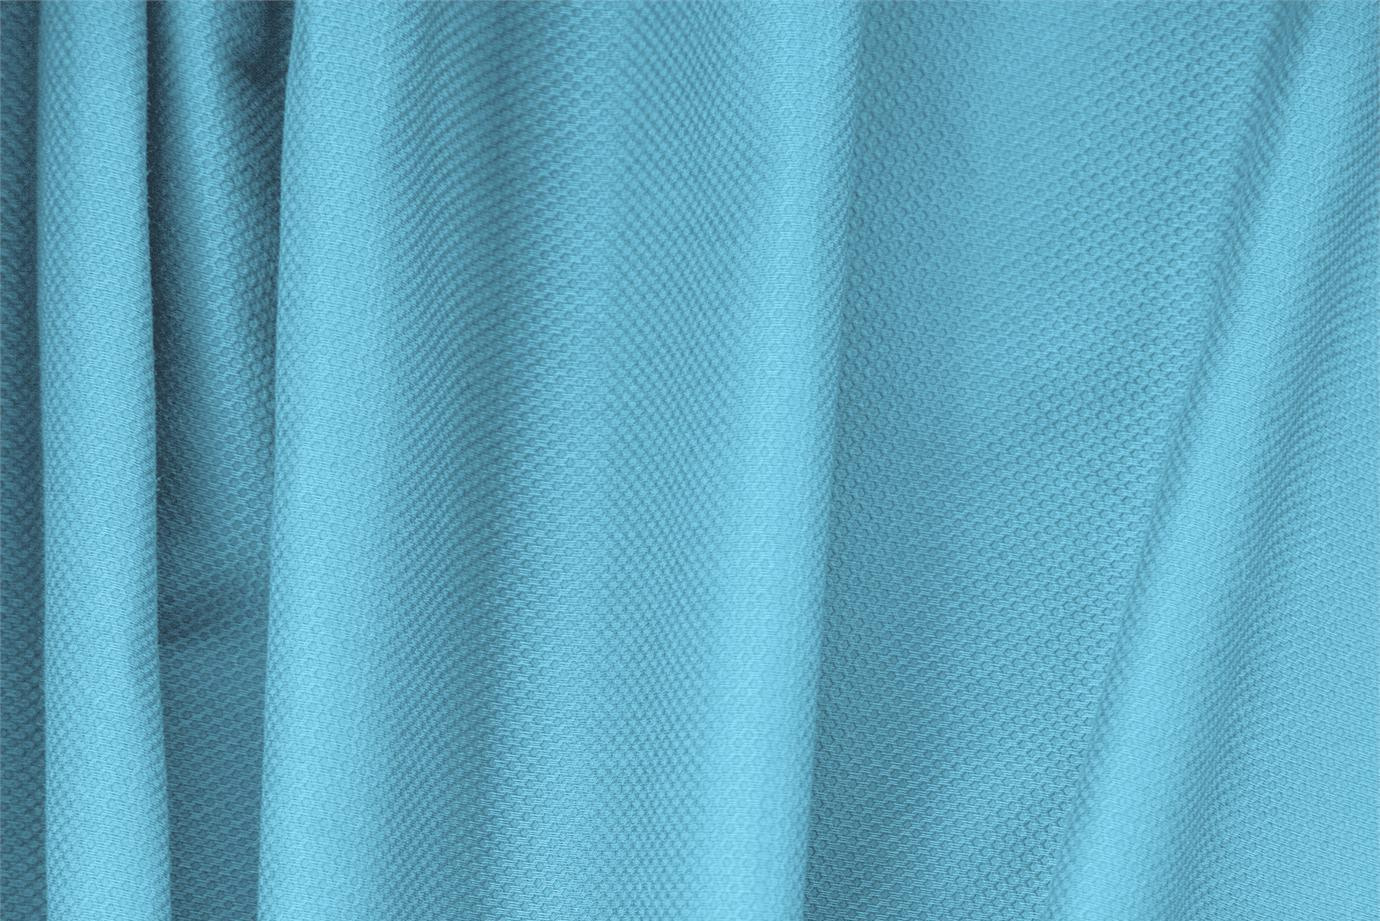 Tissu Piquet Stretch Bleu turquoise en Coton, Stretch pour vêtements